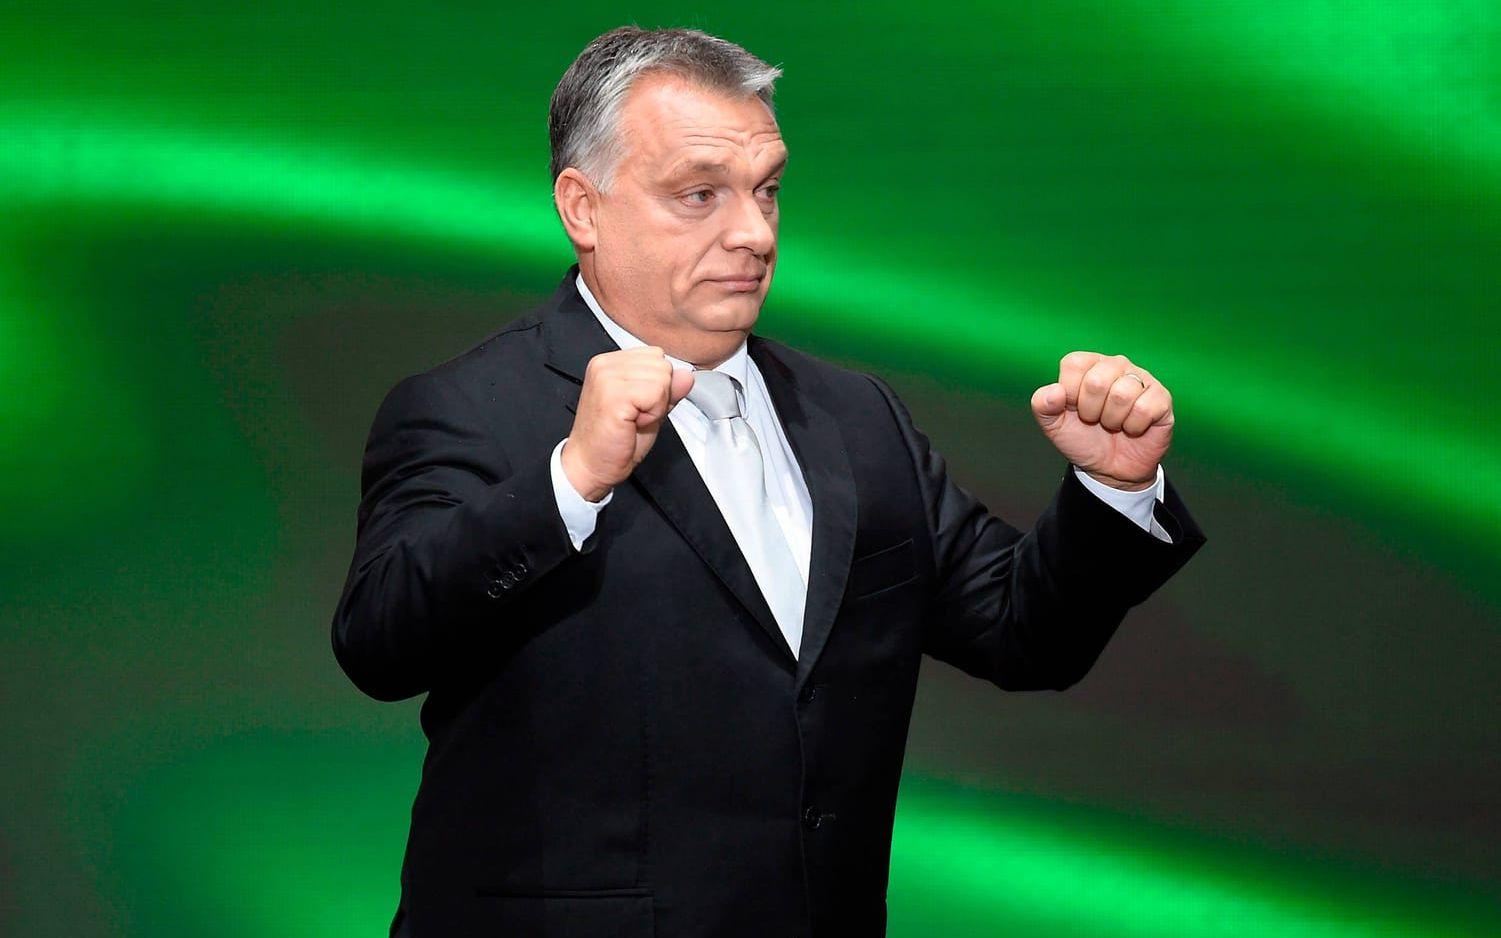 Ungerns premiärminister Viktor Orbán har länge skapat huvudvärk för många europeiska ledare. Som partiledare för det konservativa och nationalistiska partiet Fidesz har Orbán fått mycket kritik från EU för bland annat Ungerns migrationslagstiftning och för inskränkningar mot landets fria press. EU-kommissionens ordförande Jean-Claude Juncker presenterade Orbán på en presskonferens med orden "nu kommer diktatorn". ("The dictator is coming") Bild: Tamas Kovacs/MTI via AP